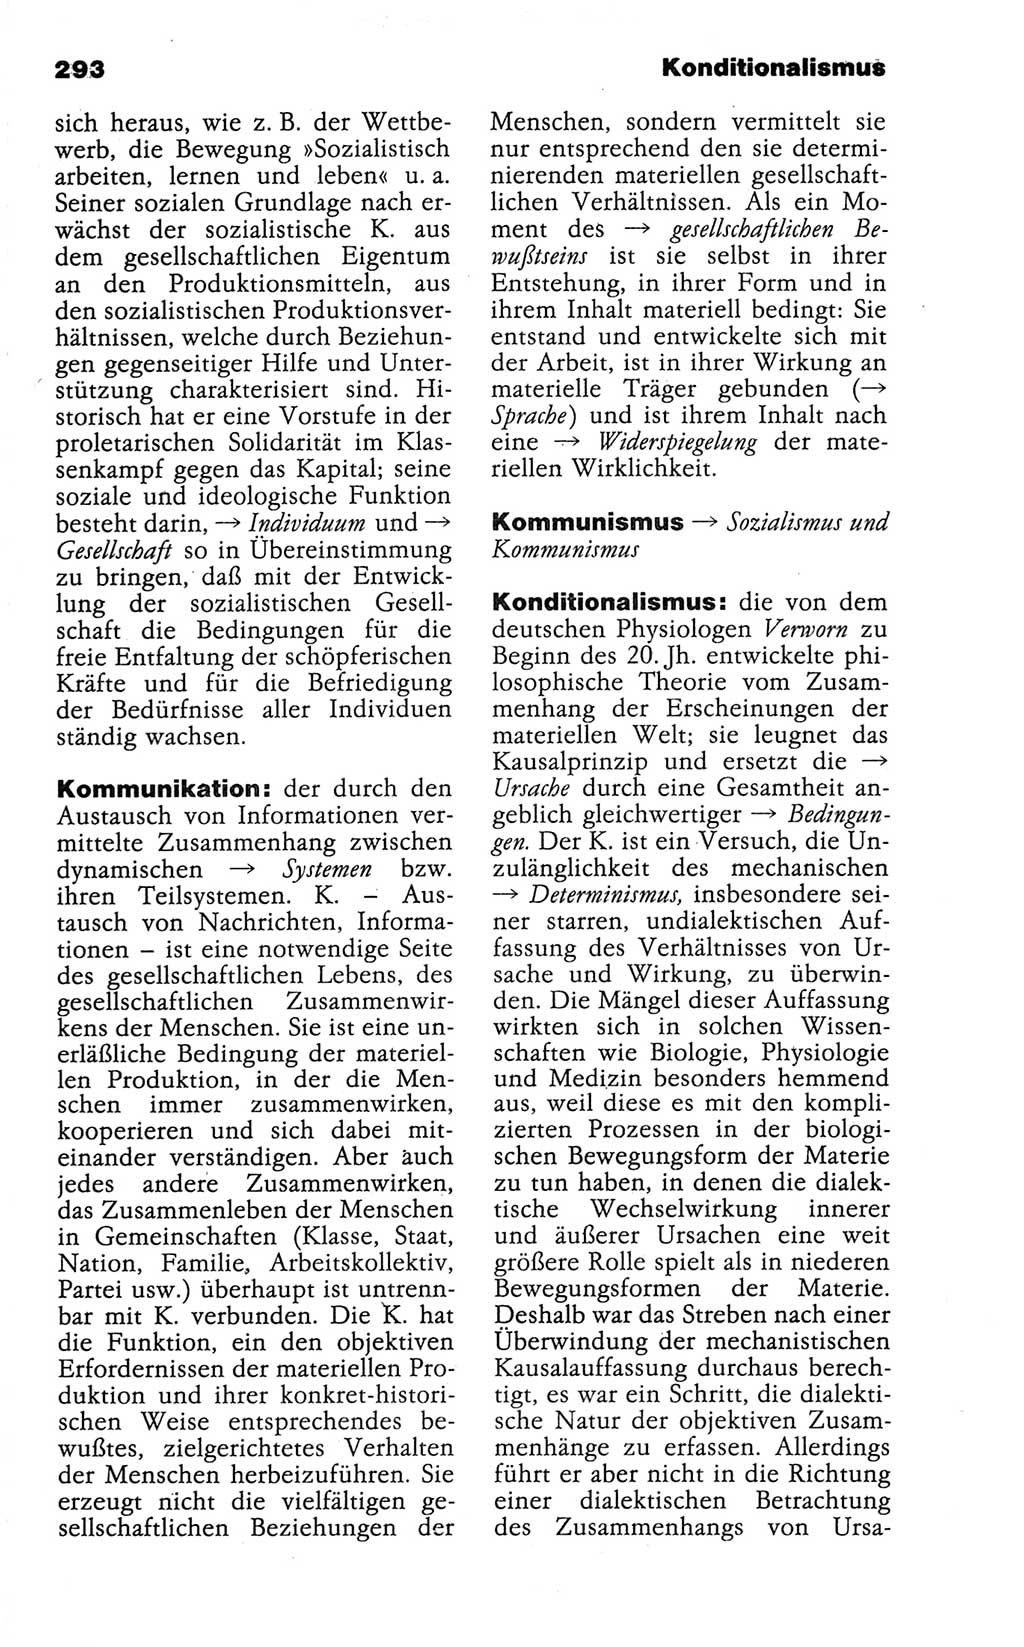 Wörterbuch der marxistisch-leninistischen Philosophie [Deutsche Demokratische Republik (DDR)] 1986, Seite 293 (Wb. ML Phil. DDR 1986, S. 293)